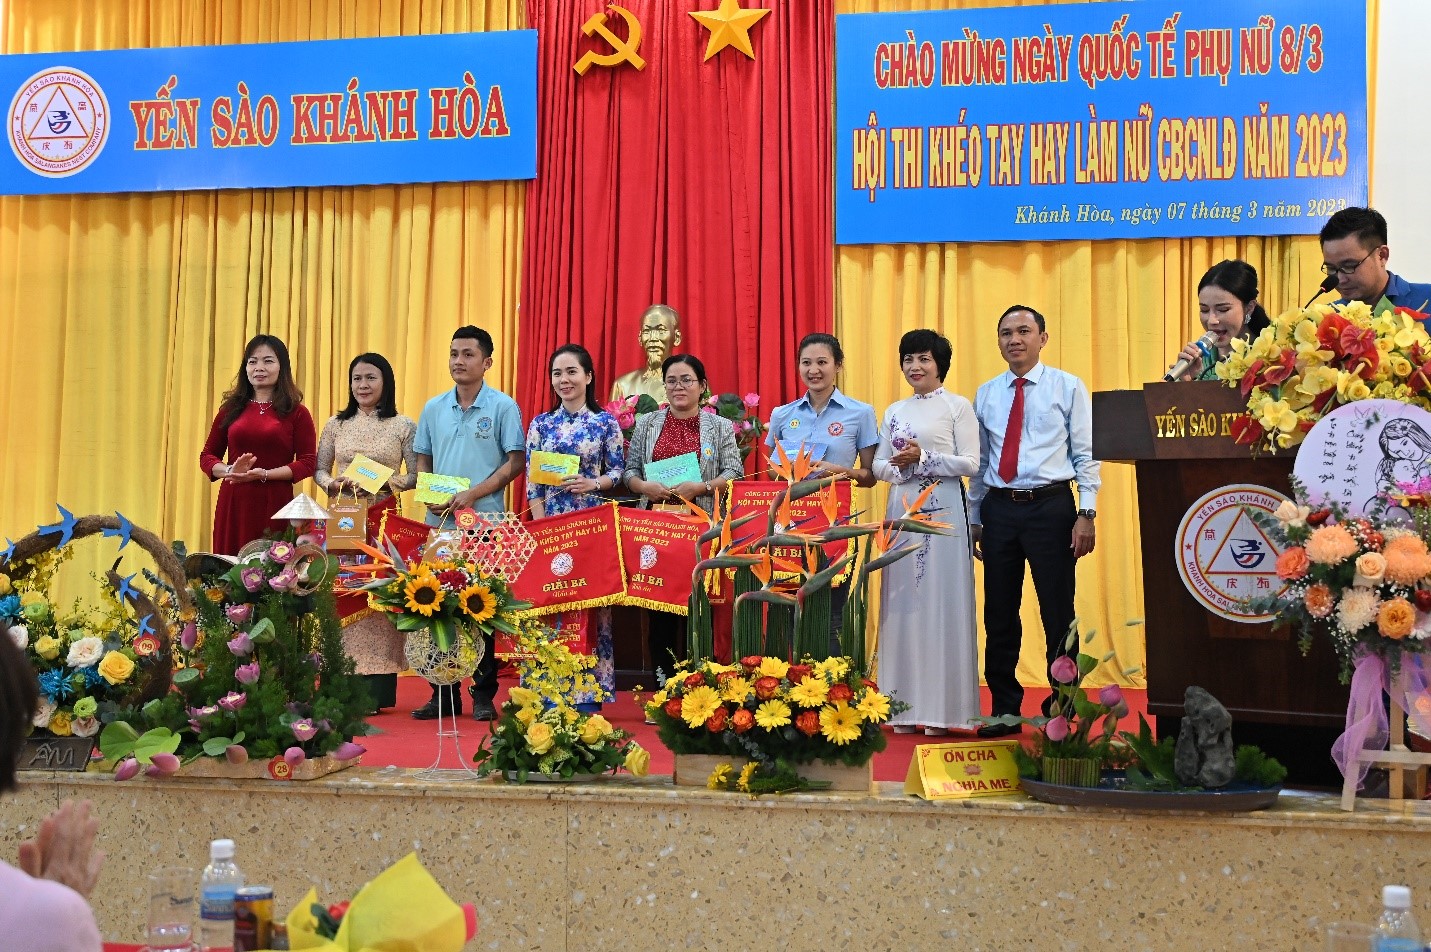 Đội đạt Giải Nhì nấu ăn Công ty CP Nước giải khát Yến sào Khánh Hòa, Nhà Khách Khánh Hòa, Ban Quản lý Dự án